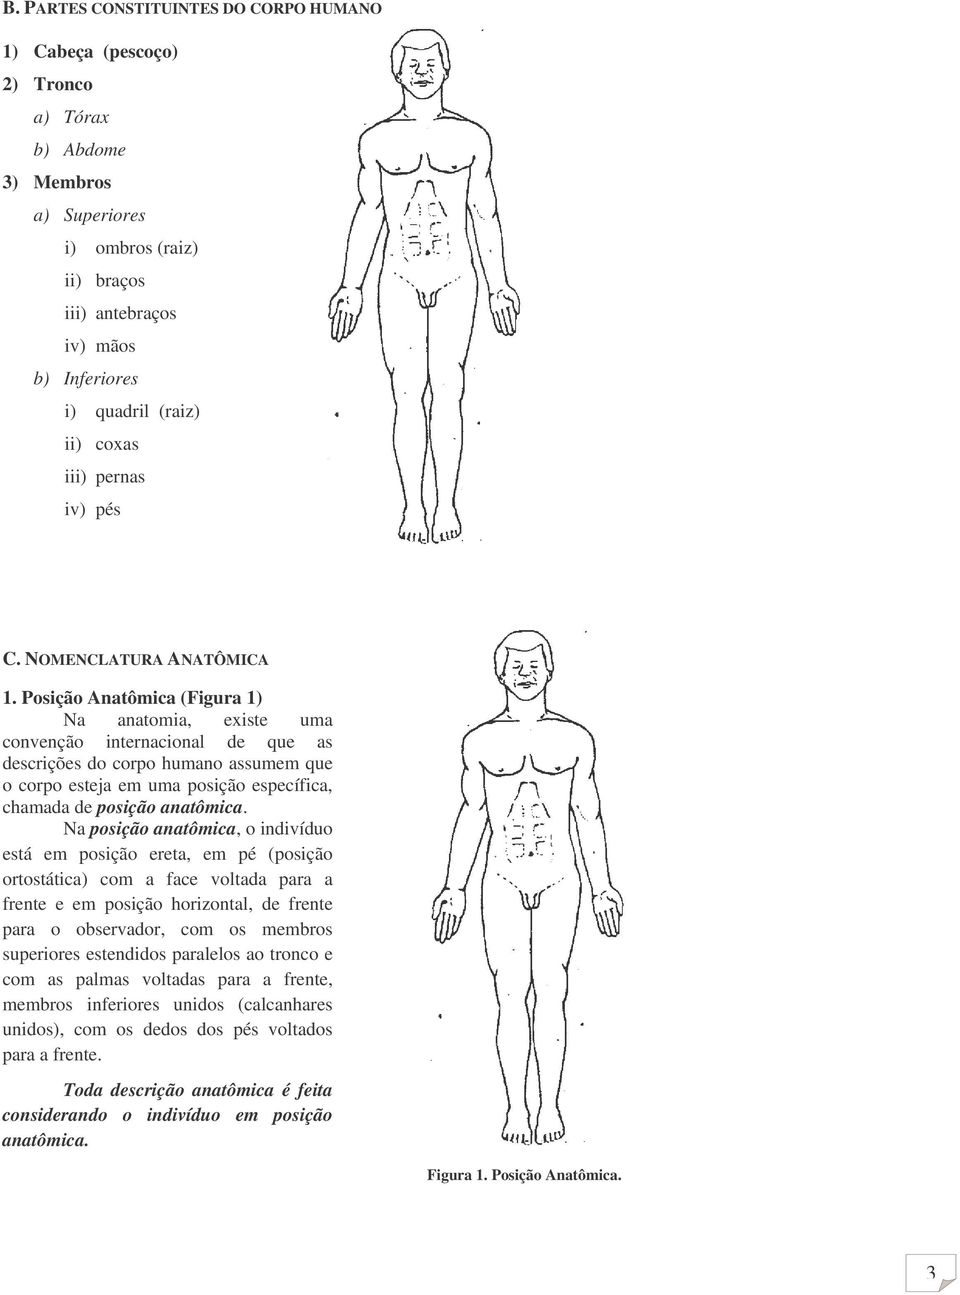 Posição Anatômica (Figura 1) Na anatomia, existe uma convenção internacional de que as descrições do corpo humano assumem que o corpo esteja em uma posição específica, chamada de posição anatômica.